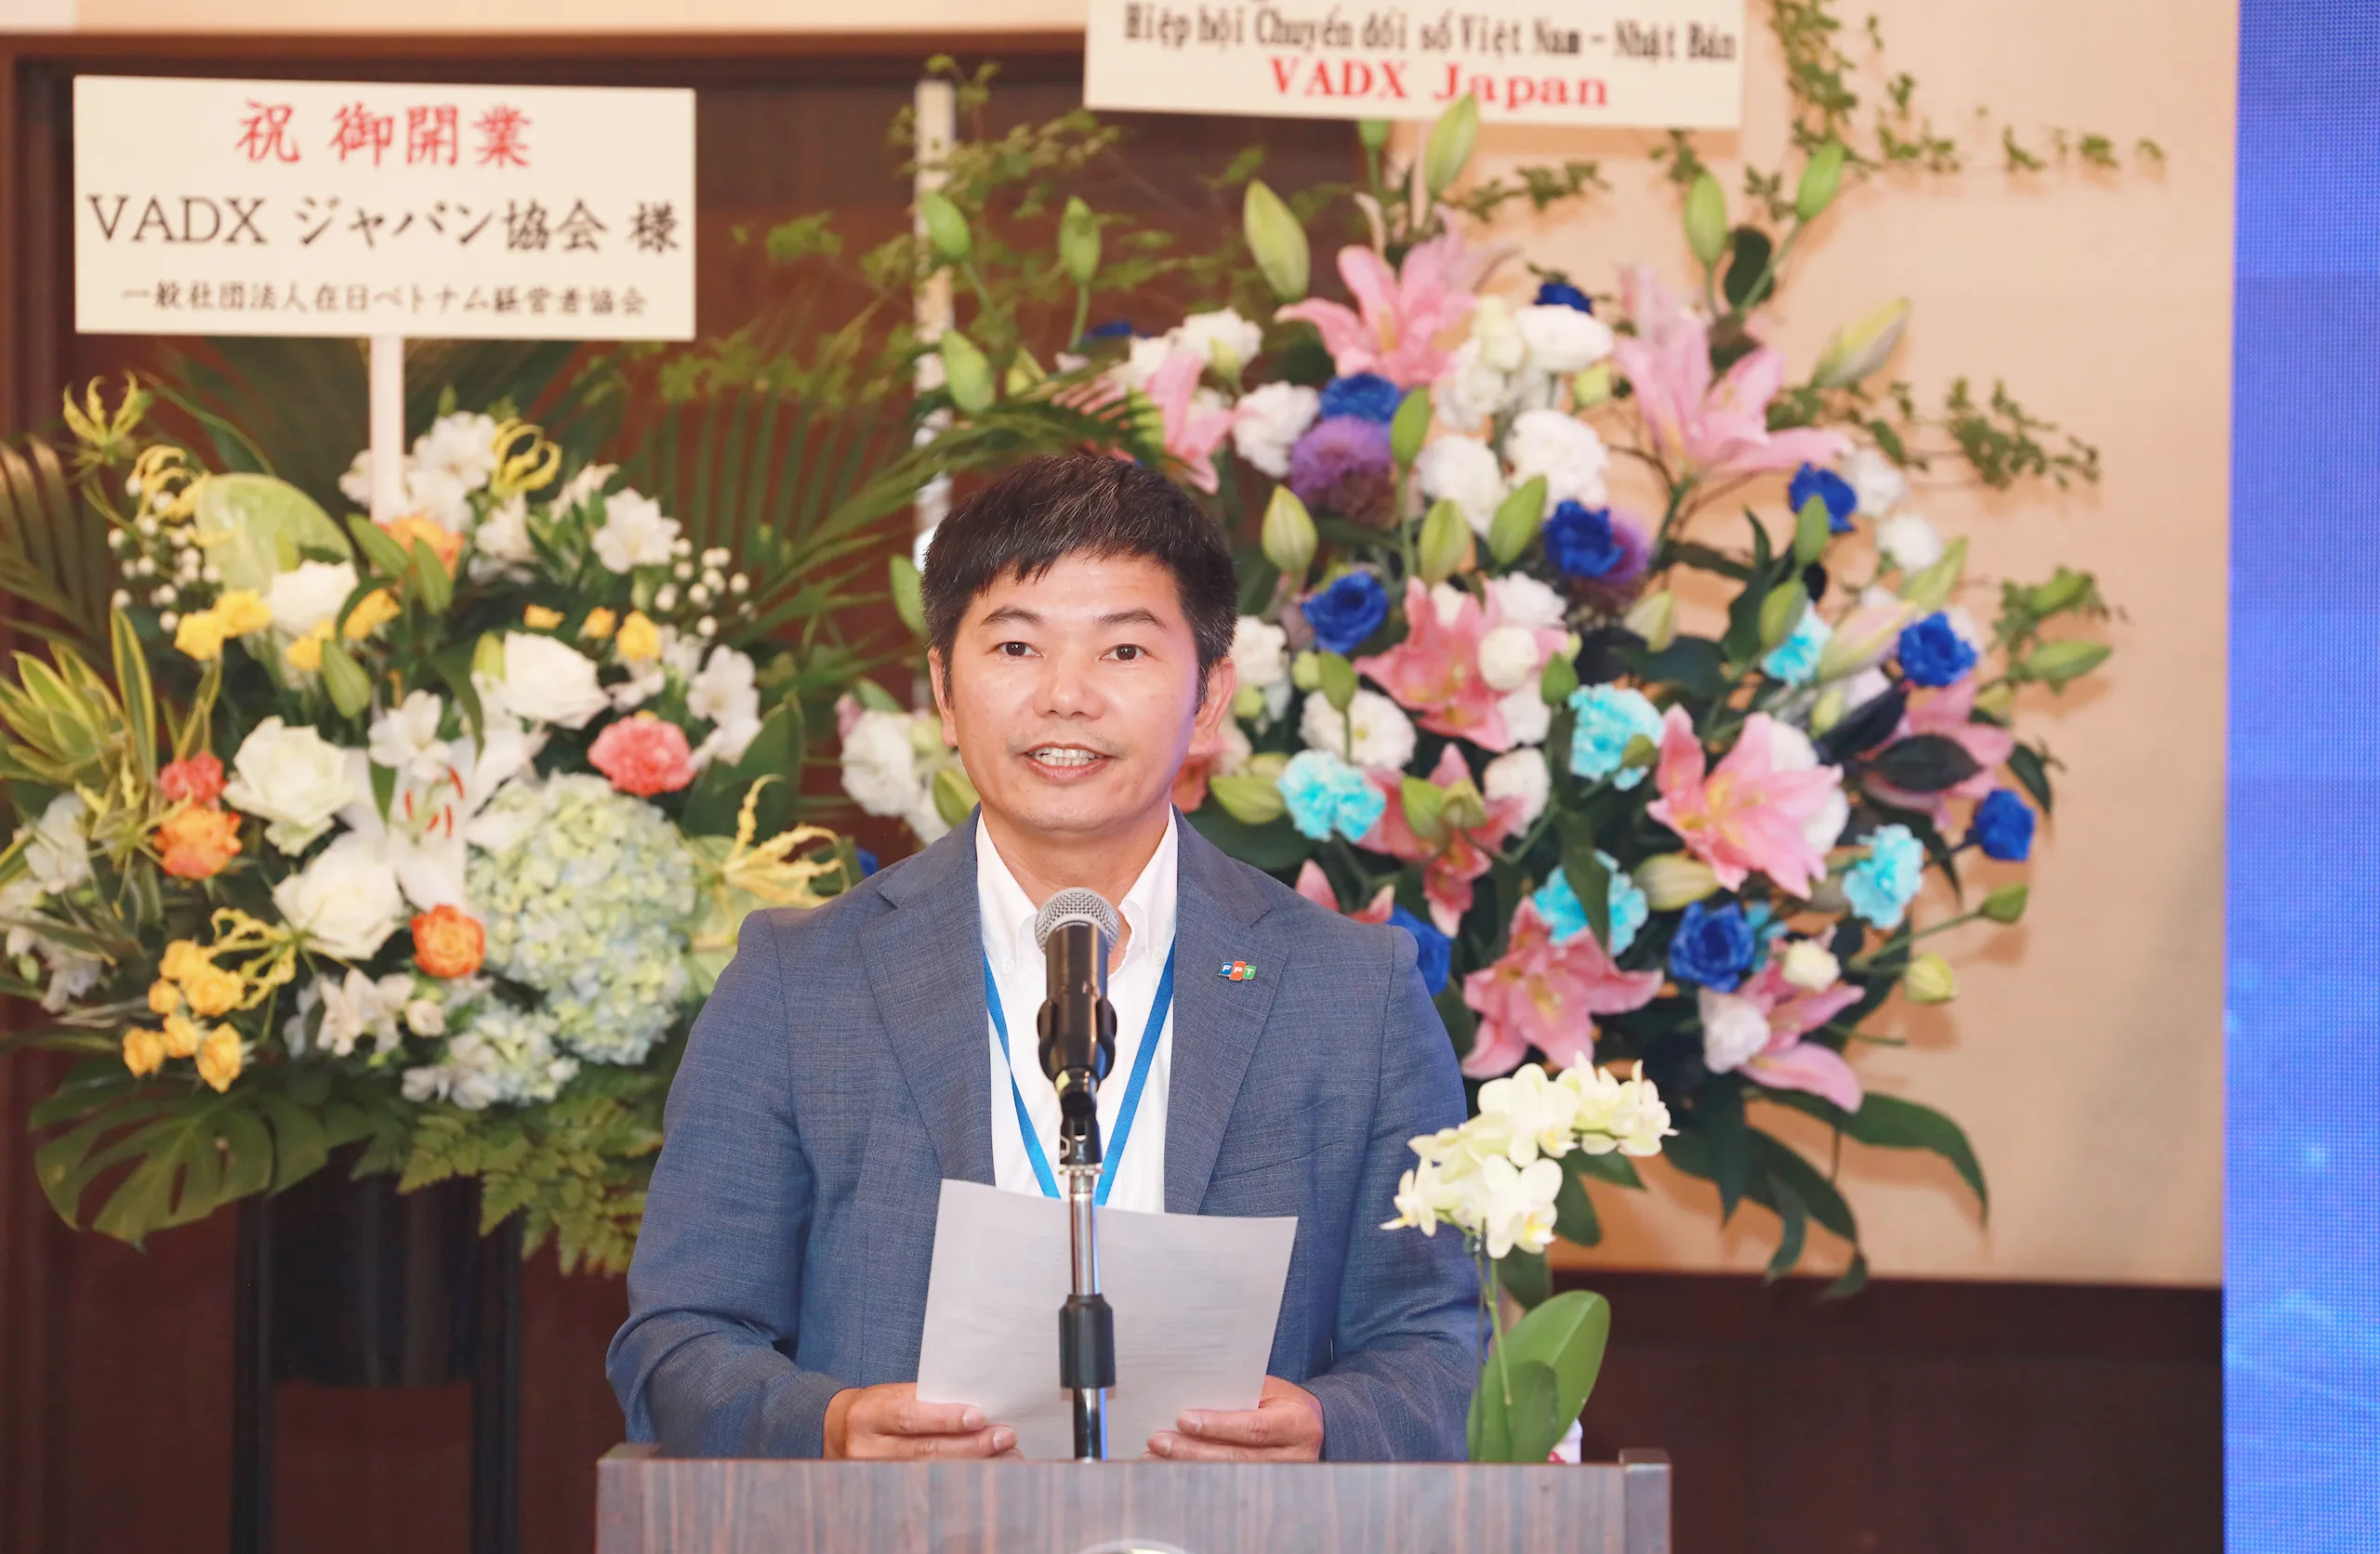 FPT Japan là chủ tịch Hiệp hội Chuyển đổi số Việt Nam - Nhật Bản